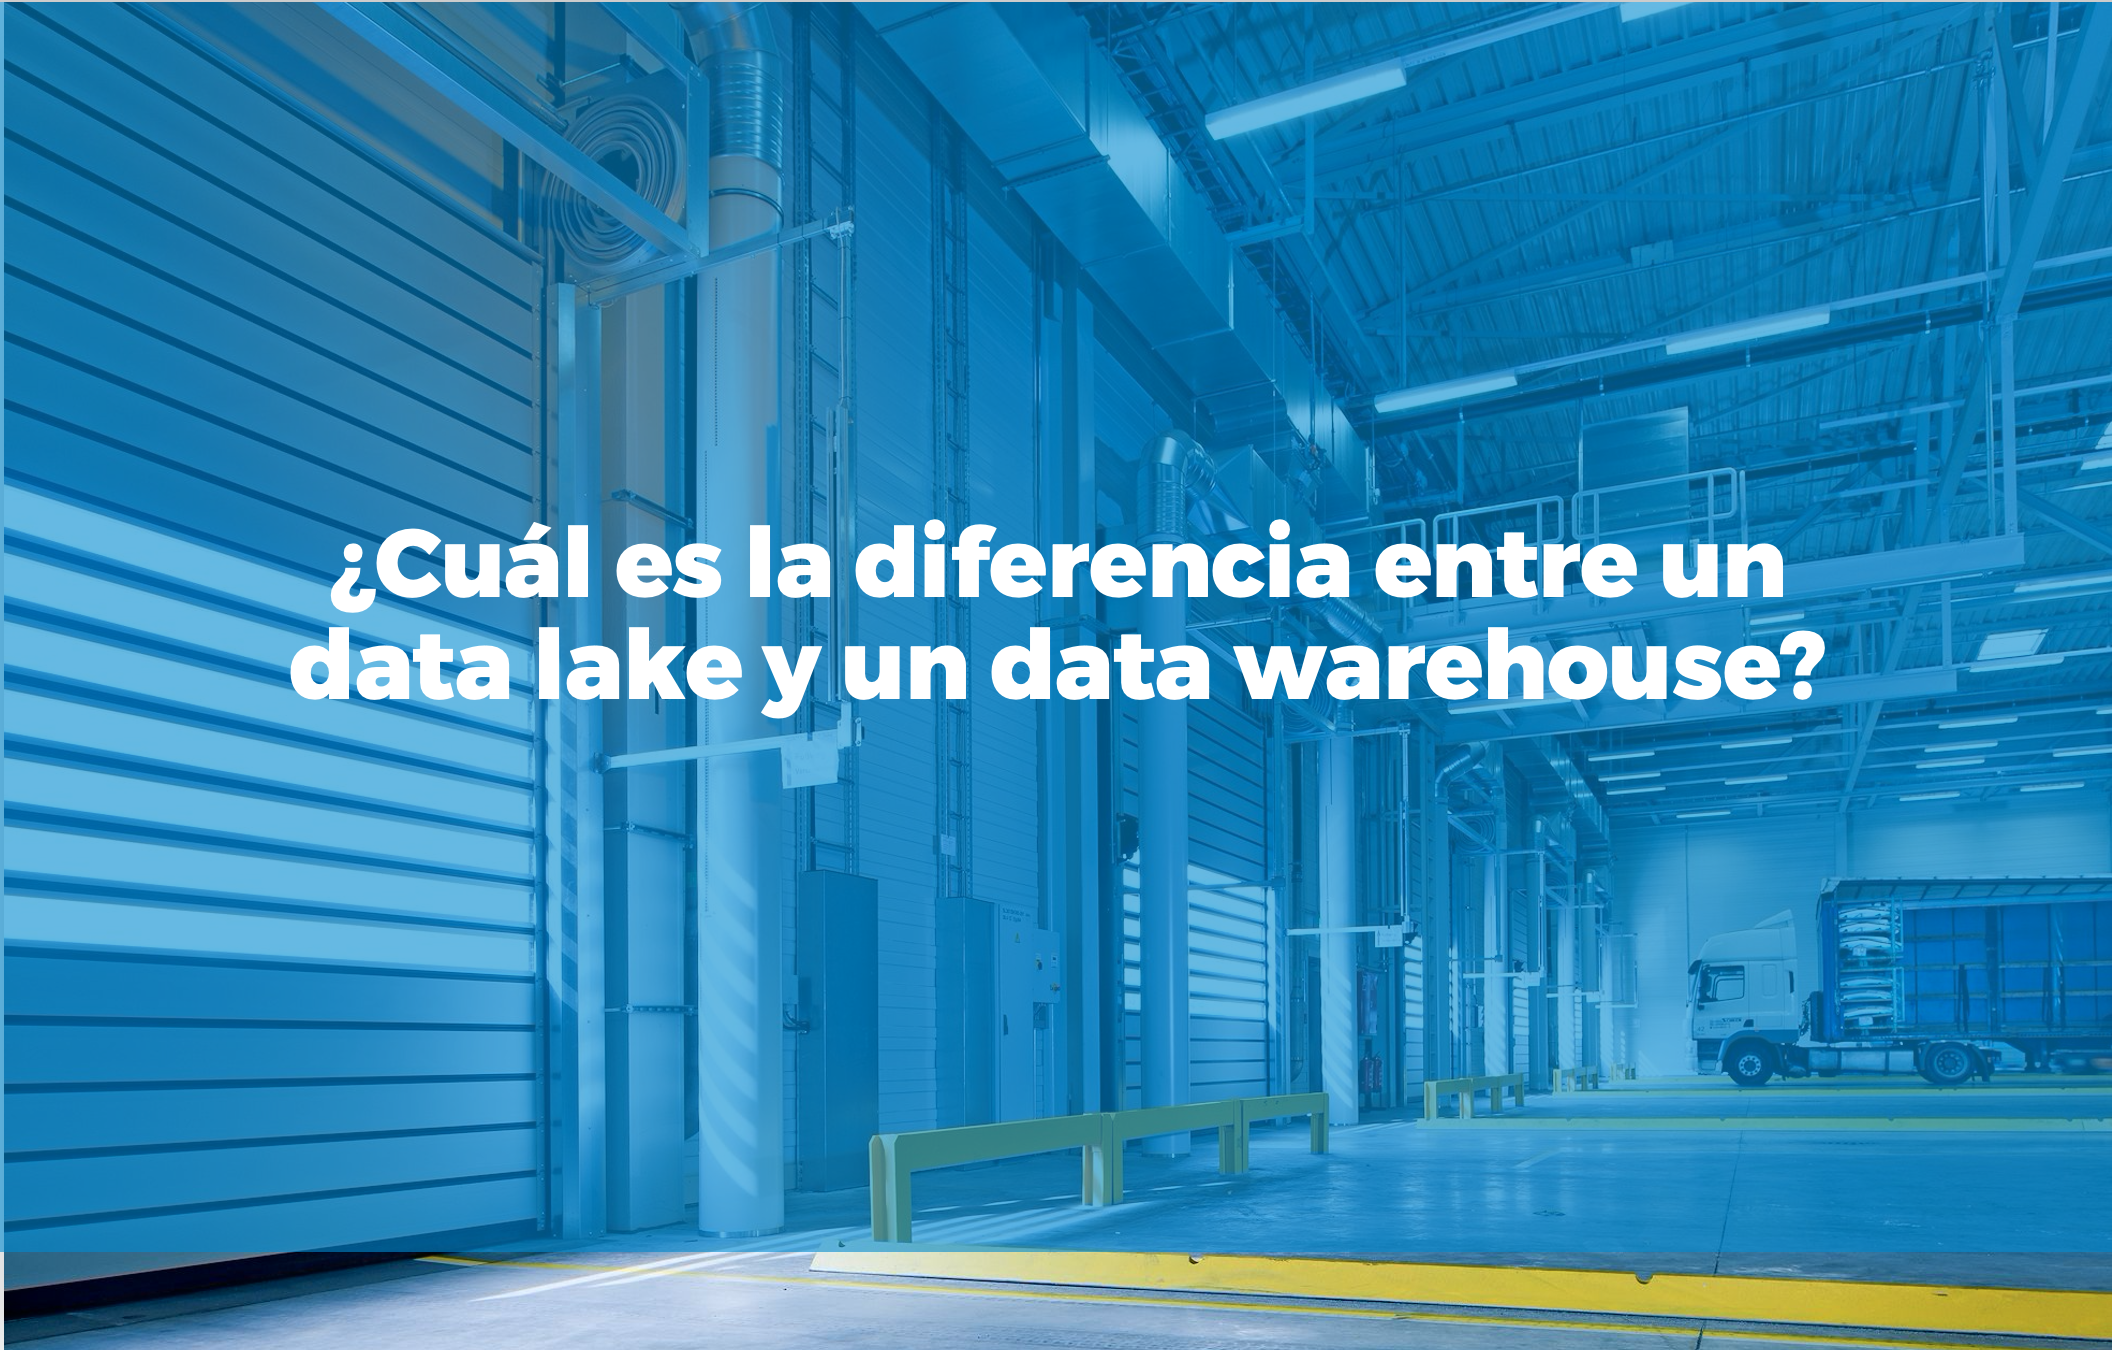 Bismart cuál es la diferencia entre un data lake y un data warehouse